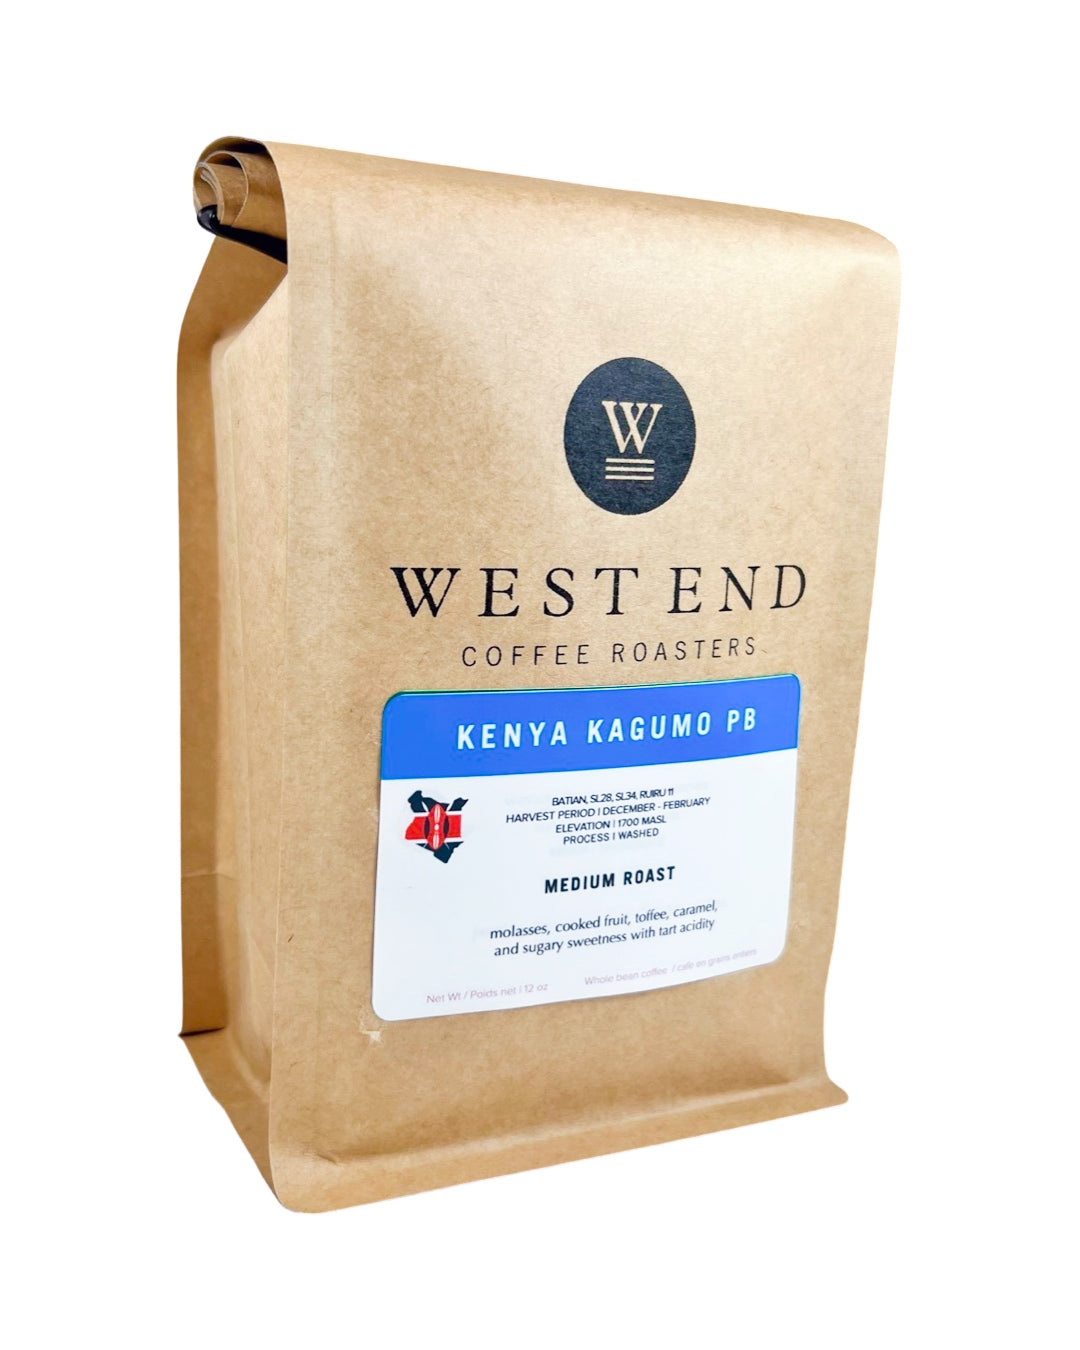 Kenya Kagumo PB Microlot - medium roast - West End Coffee Roasters